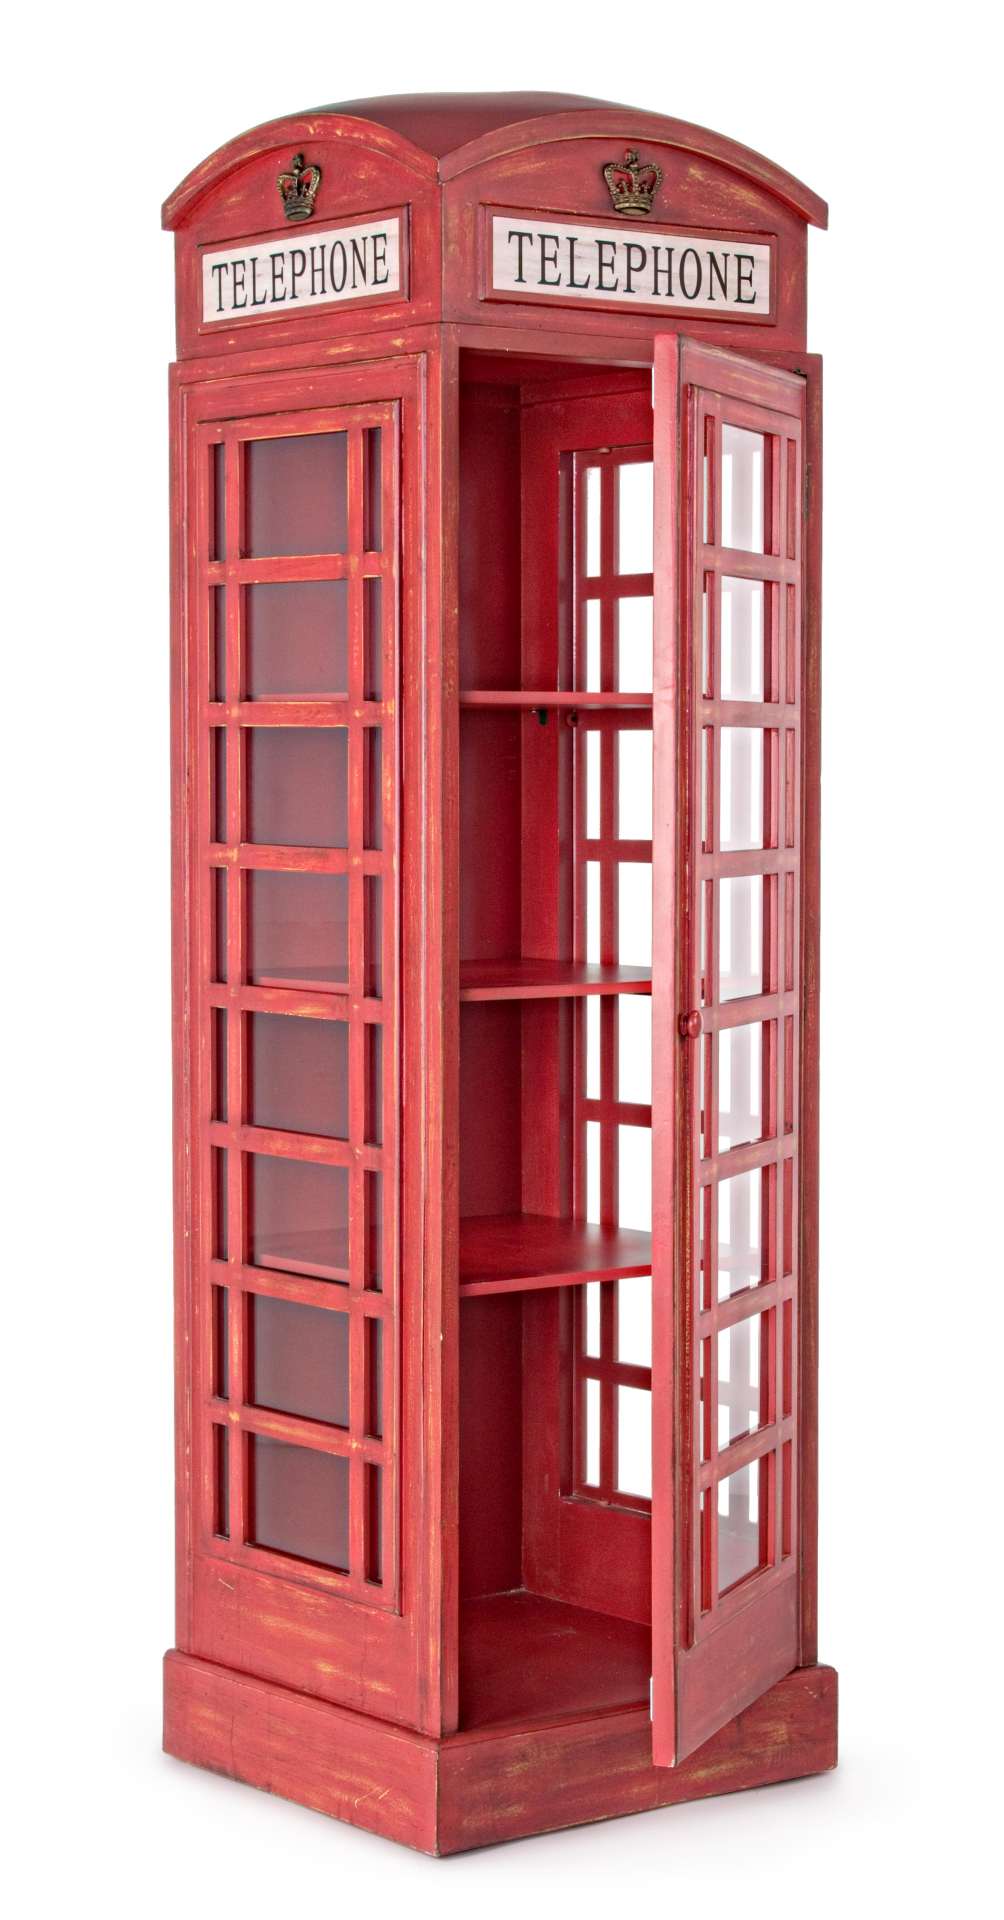 Das Regal Red Cabin überzeugt mit seinem klassischen Design. Gefertigt wurde es aus Tannenholz, welches einen roten Farbton besitzt. Das Gestell ist auch aus Tannenholz. Das Bücherregal verfügt über eine Tür und drei Böden. Die Breite beträgt 53 cm.